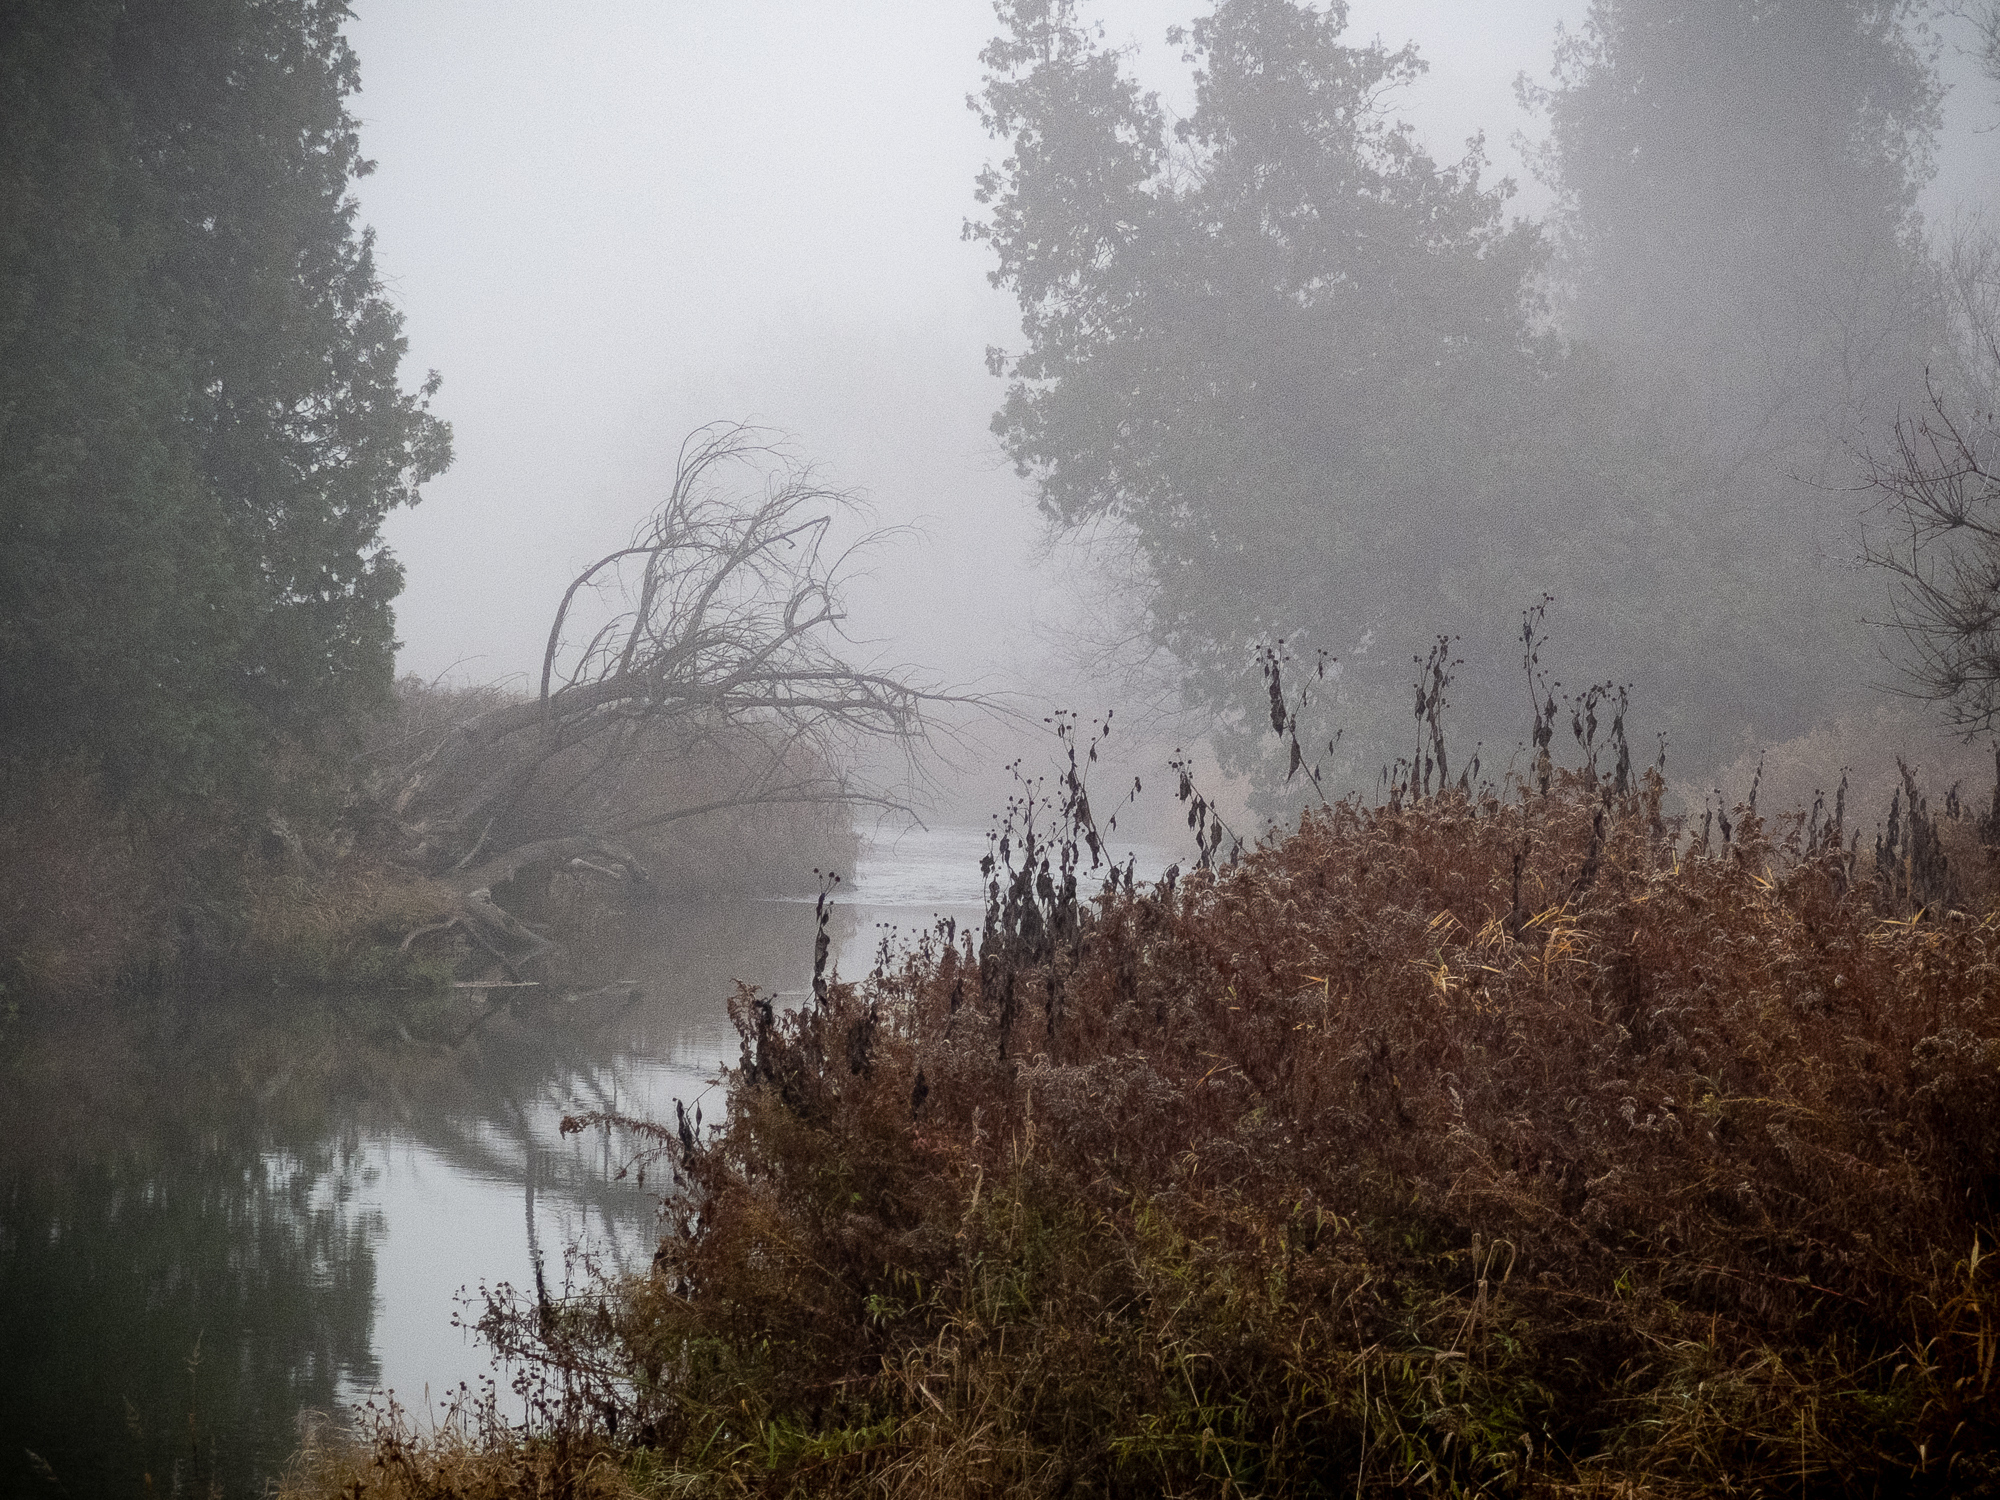 Misty river scene